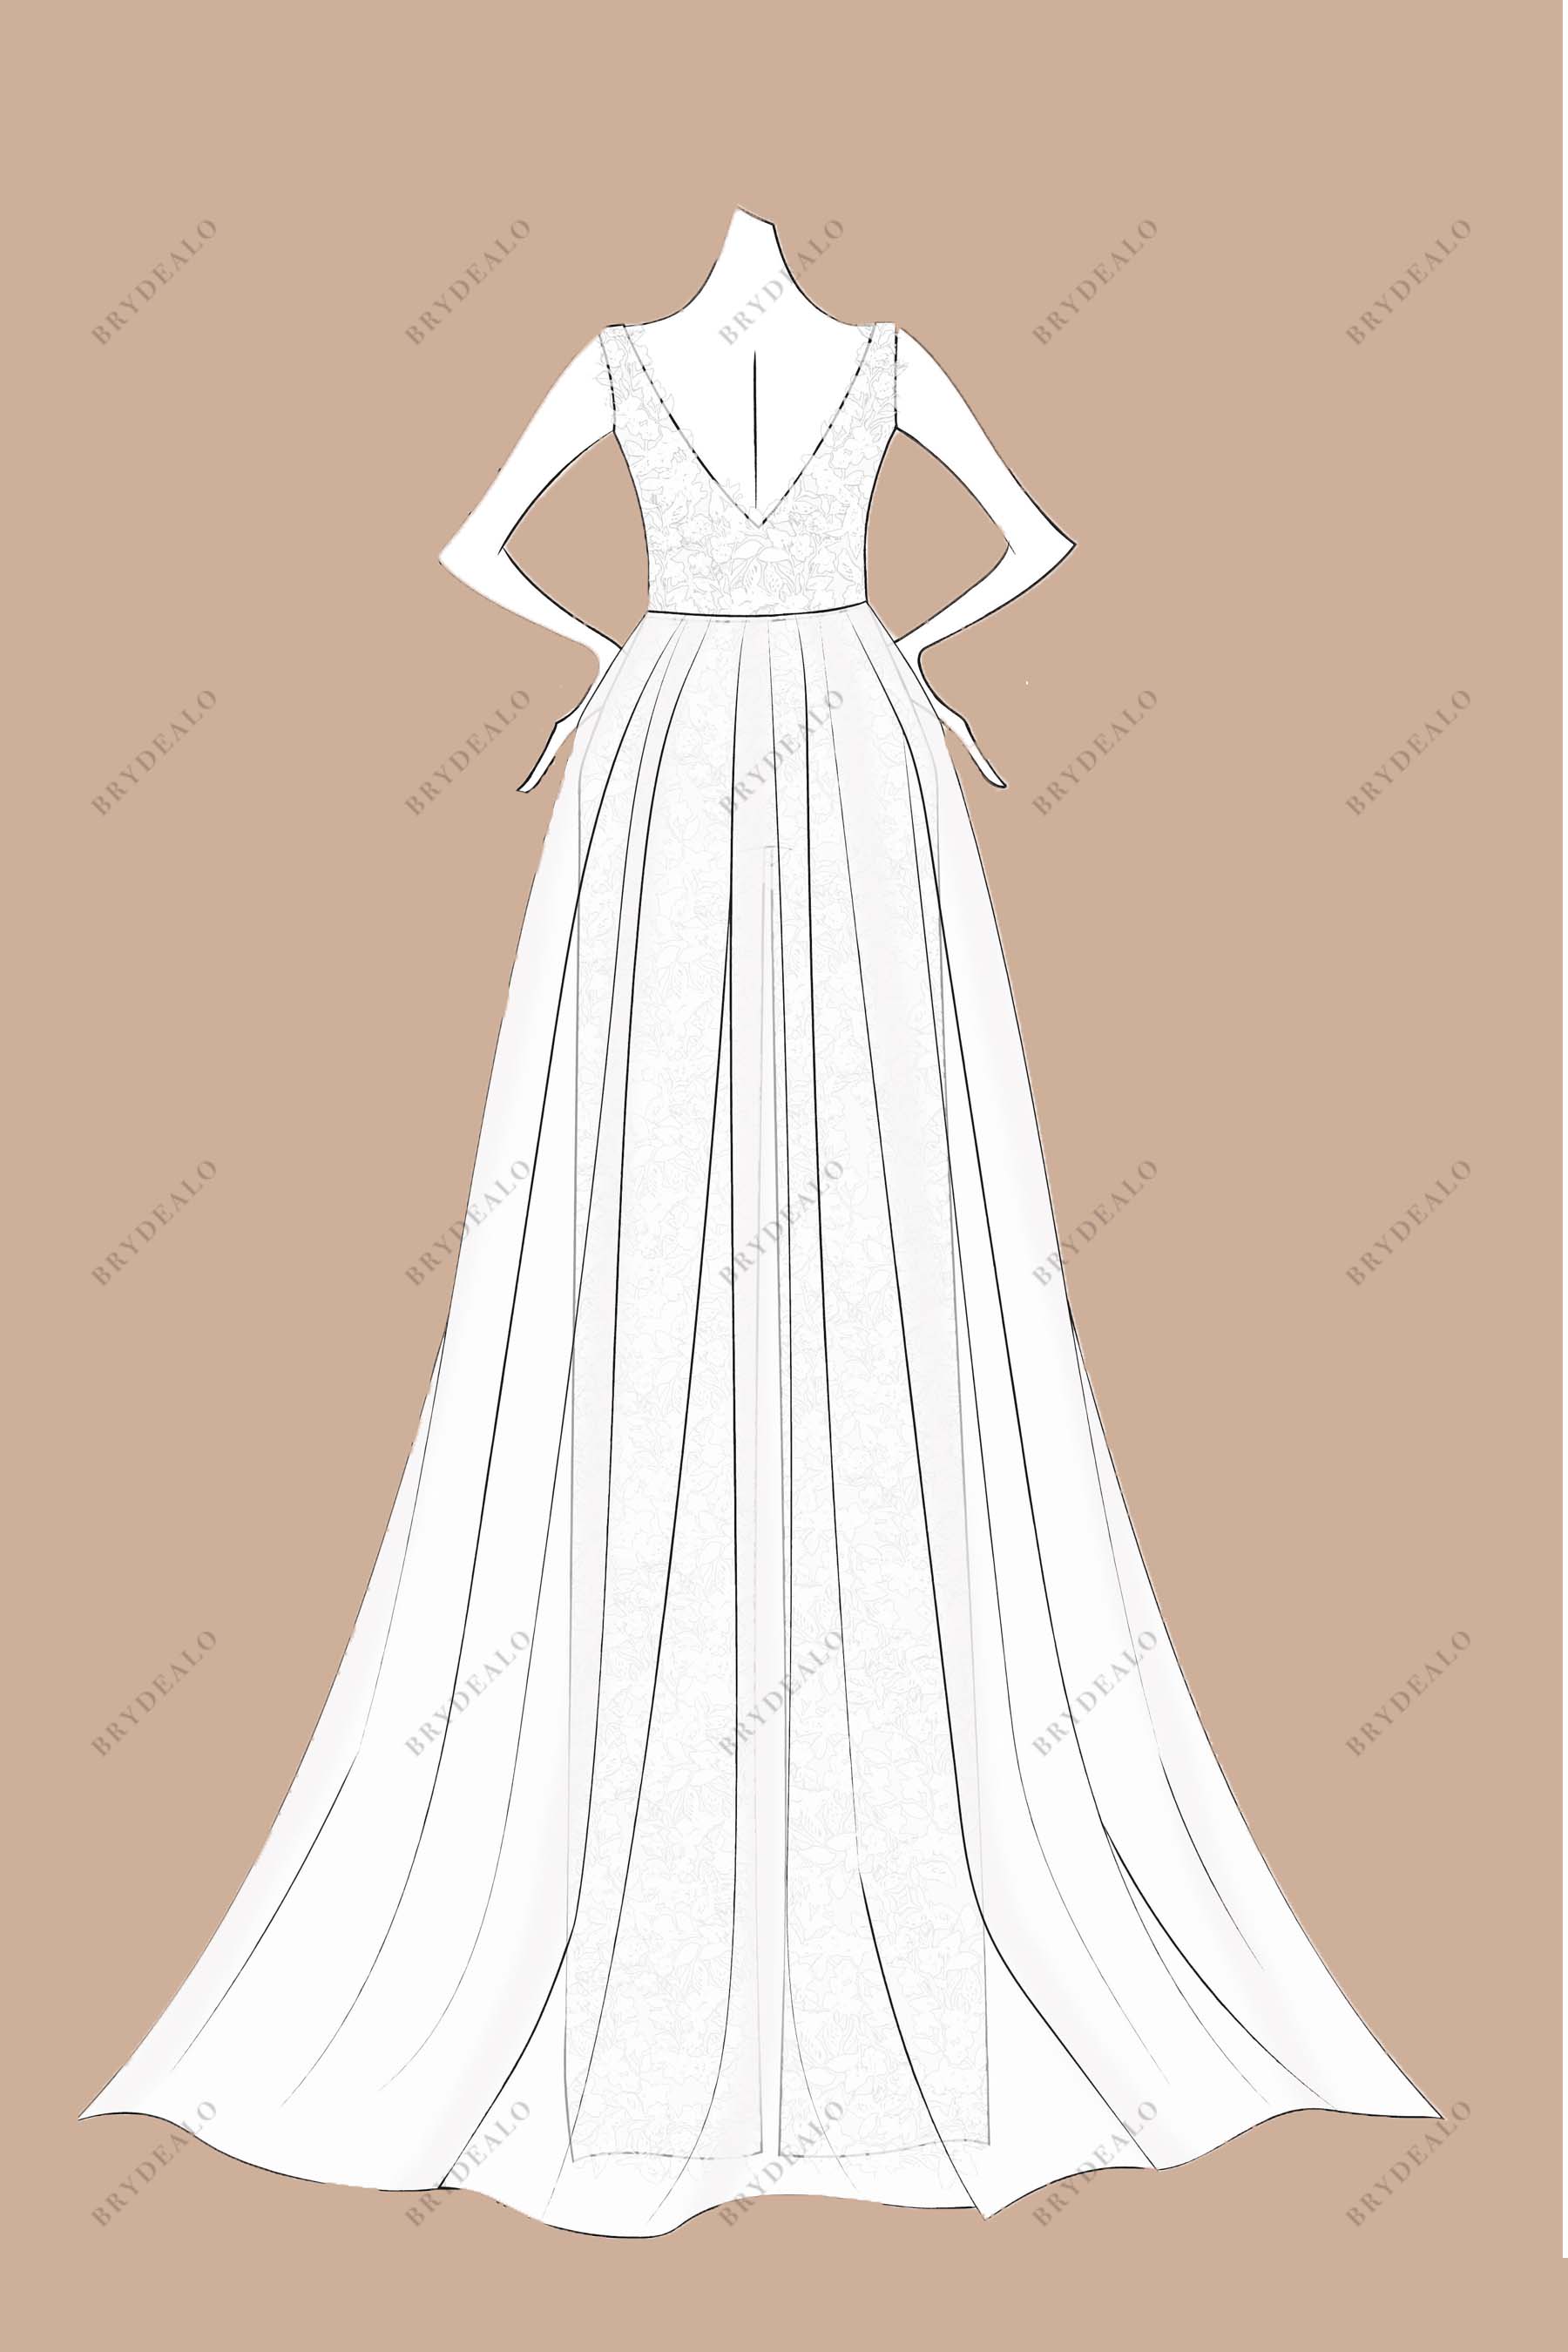 V-back tulle A-line overskirt bridal dress sketch